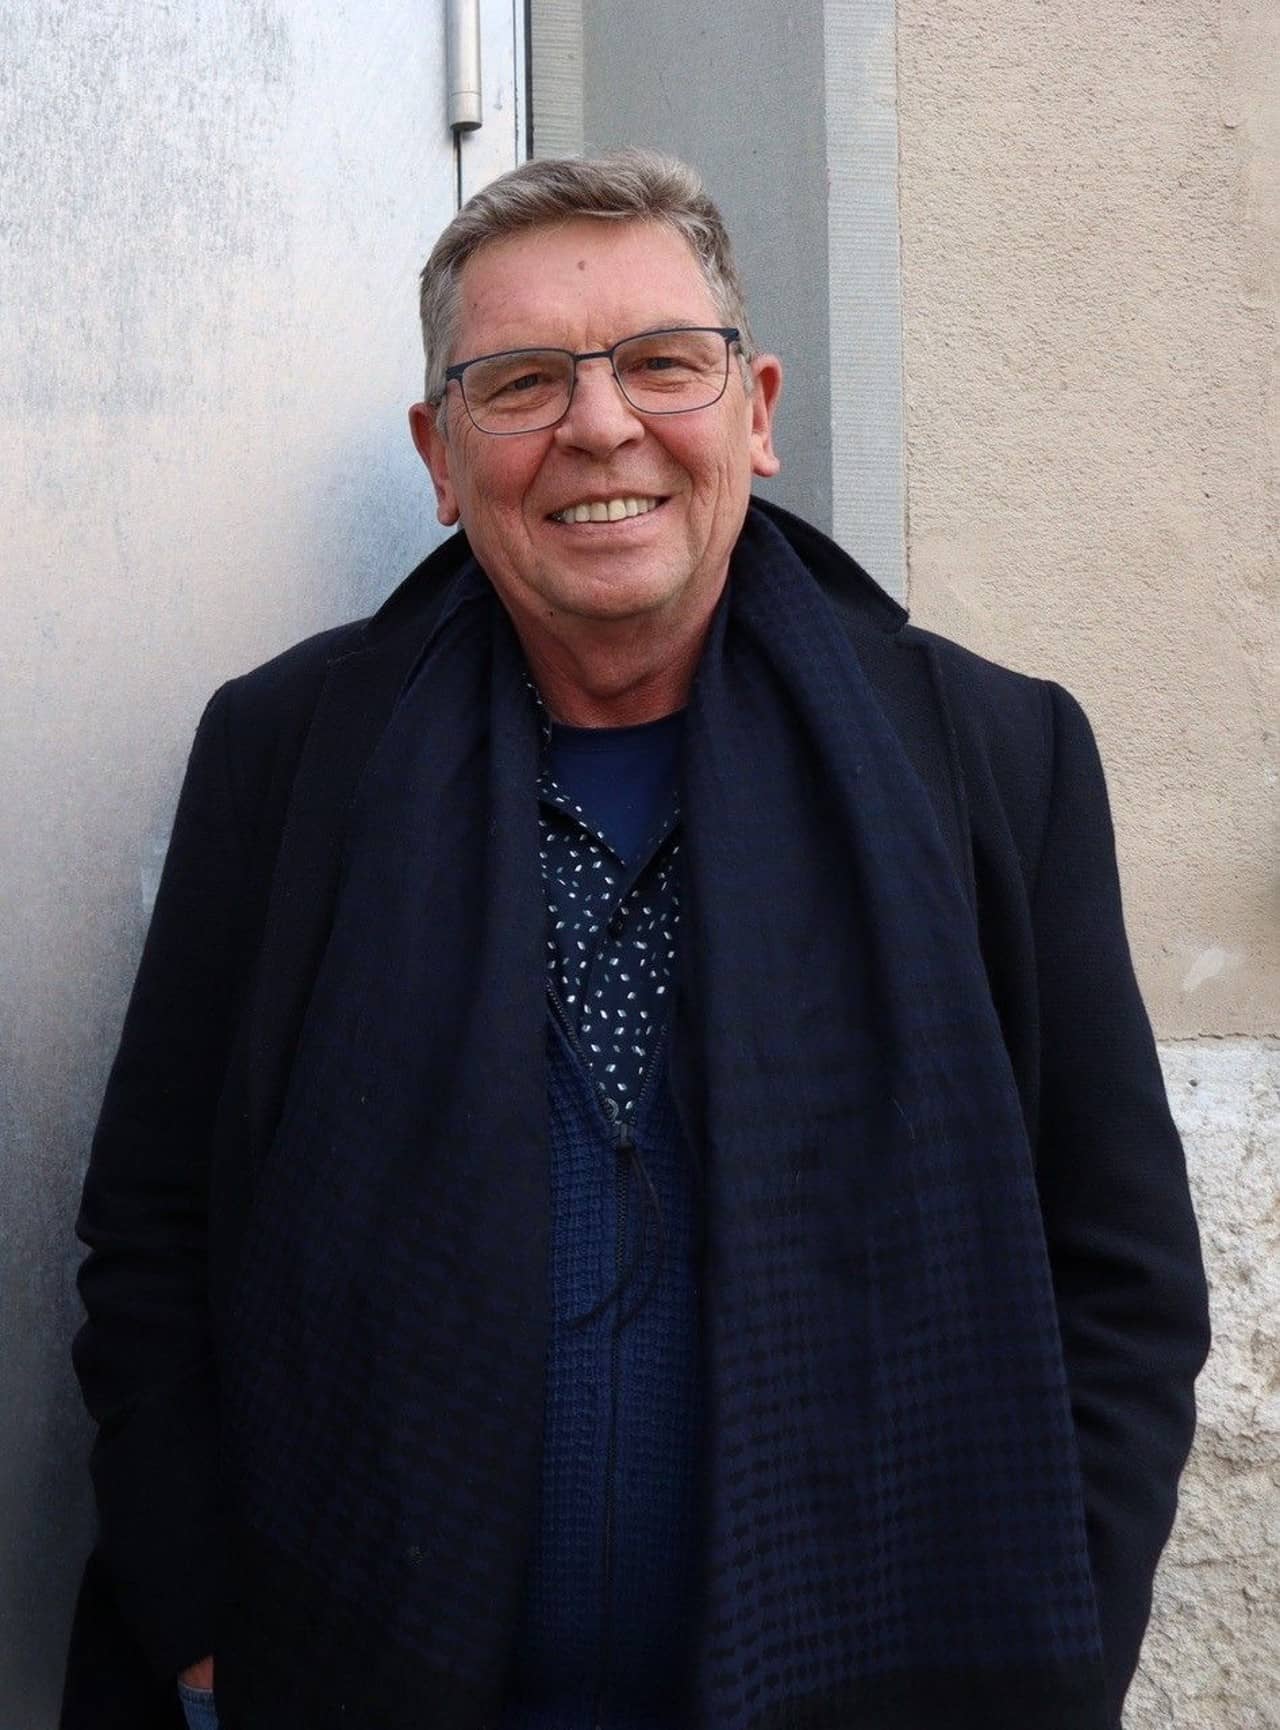 Mann mit Namen Peter-Jakob Kelting, gekleidet mit Mantel und Brille